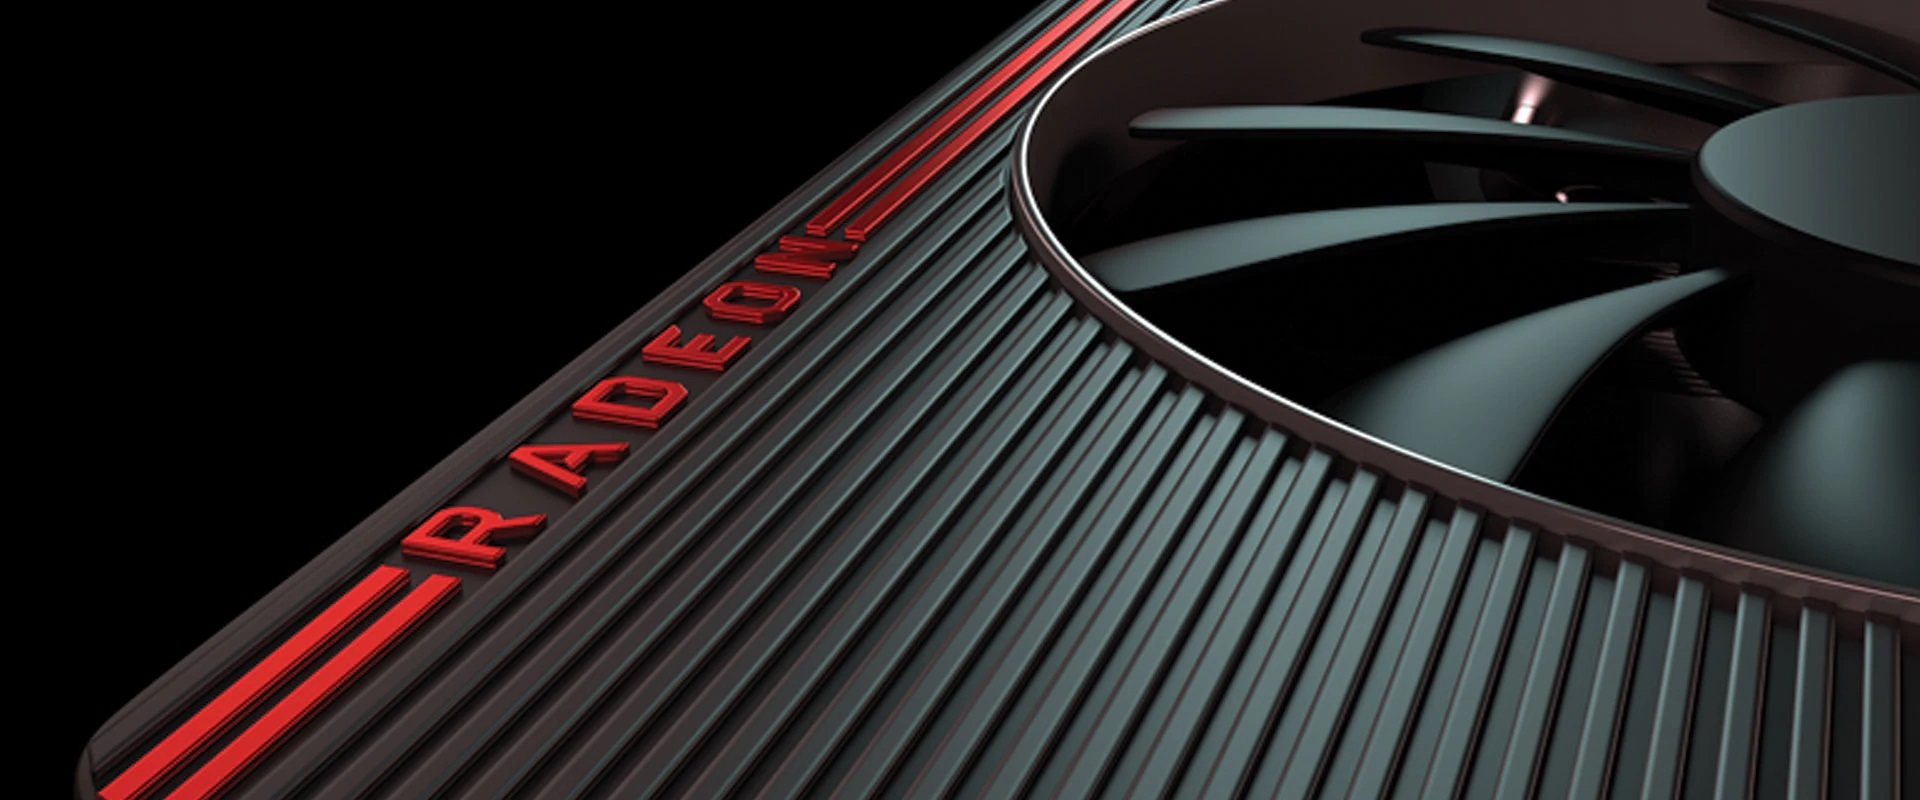 AMD Big Navi ekran kartı çıkış tarihi sızdırıldı